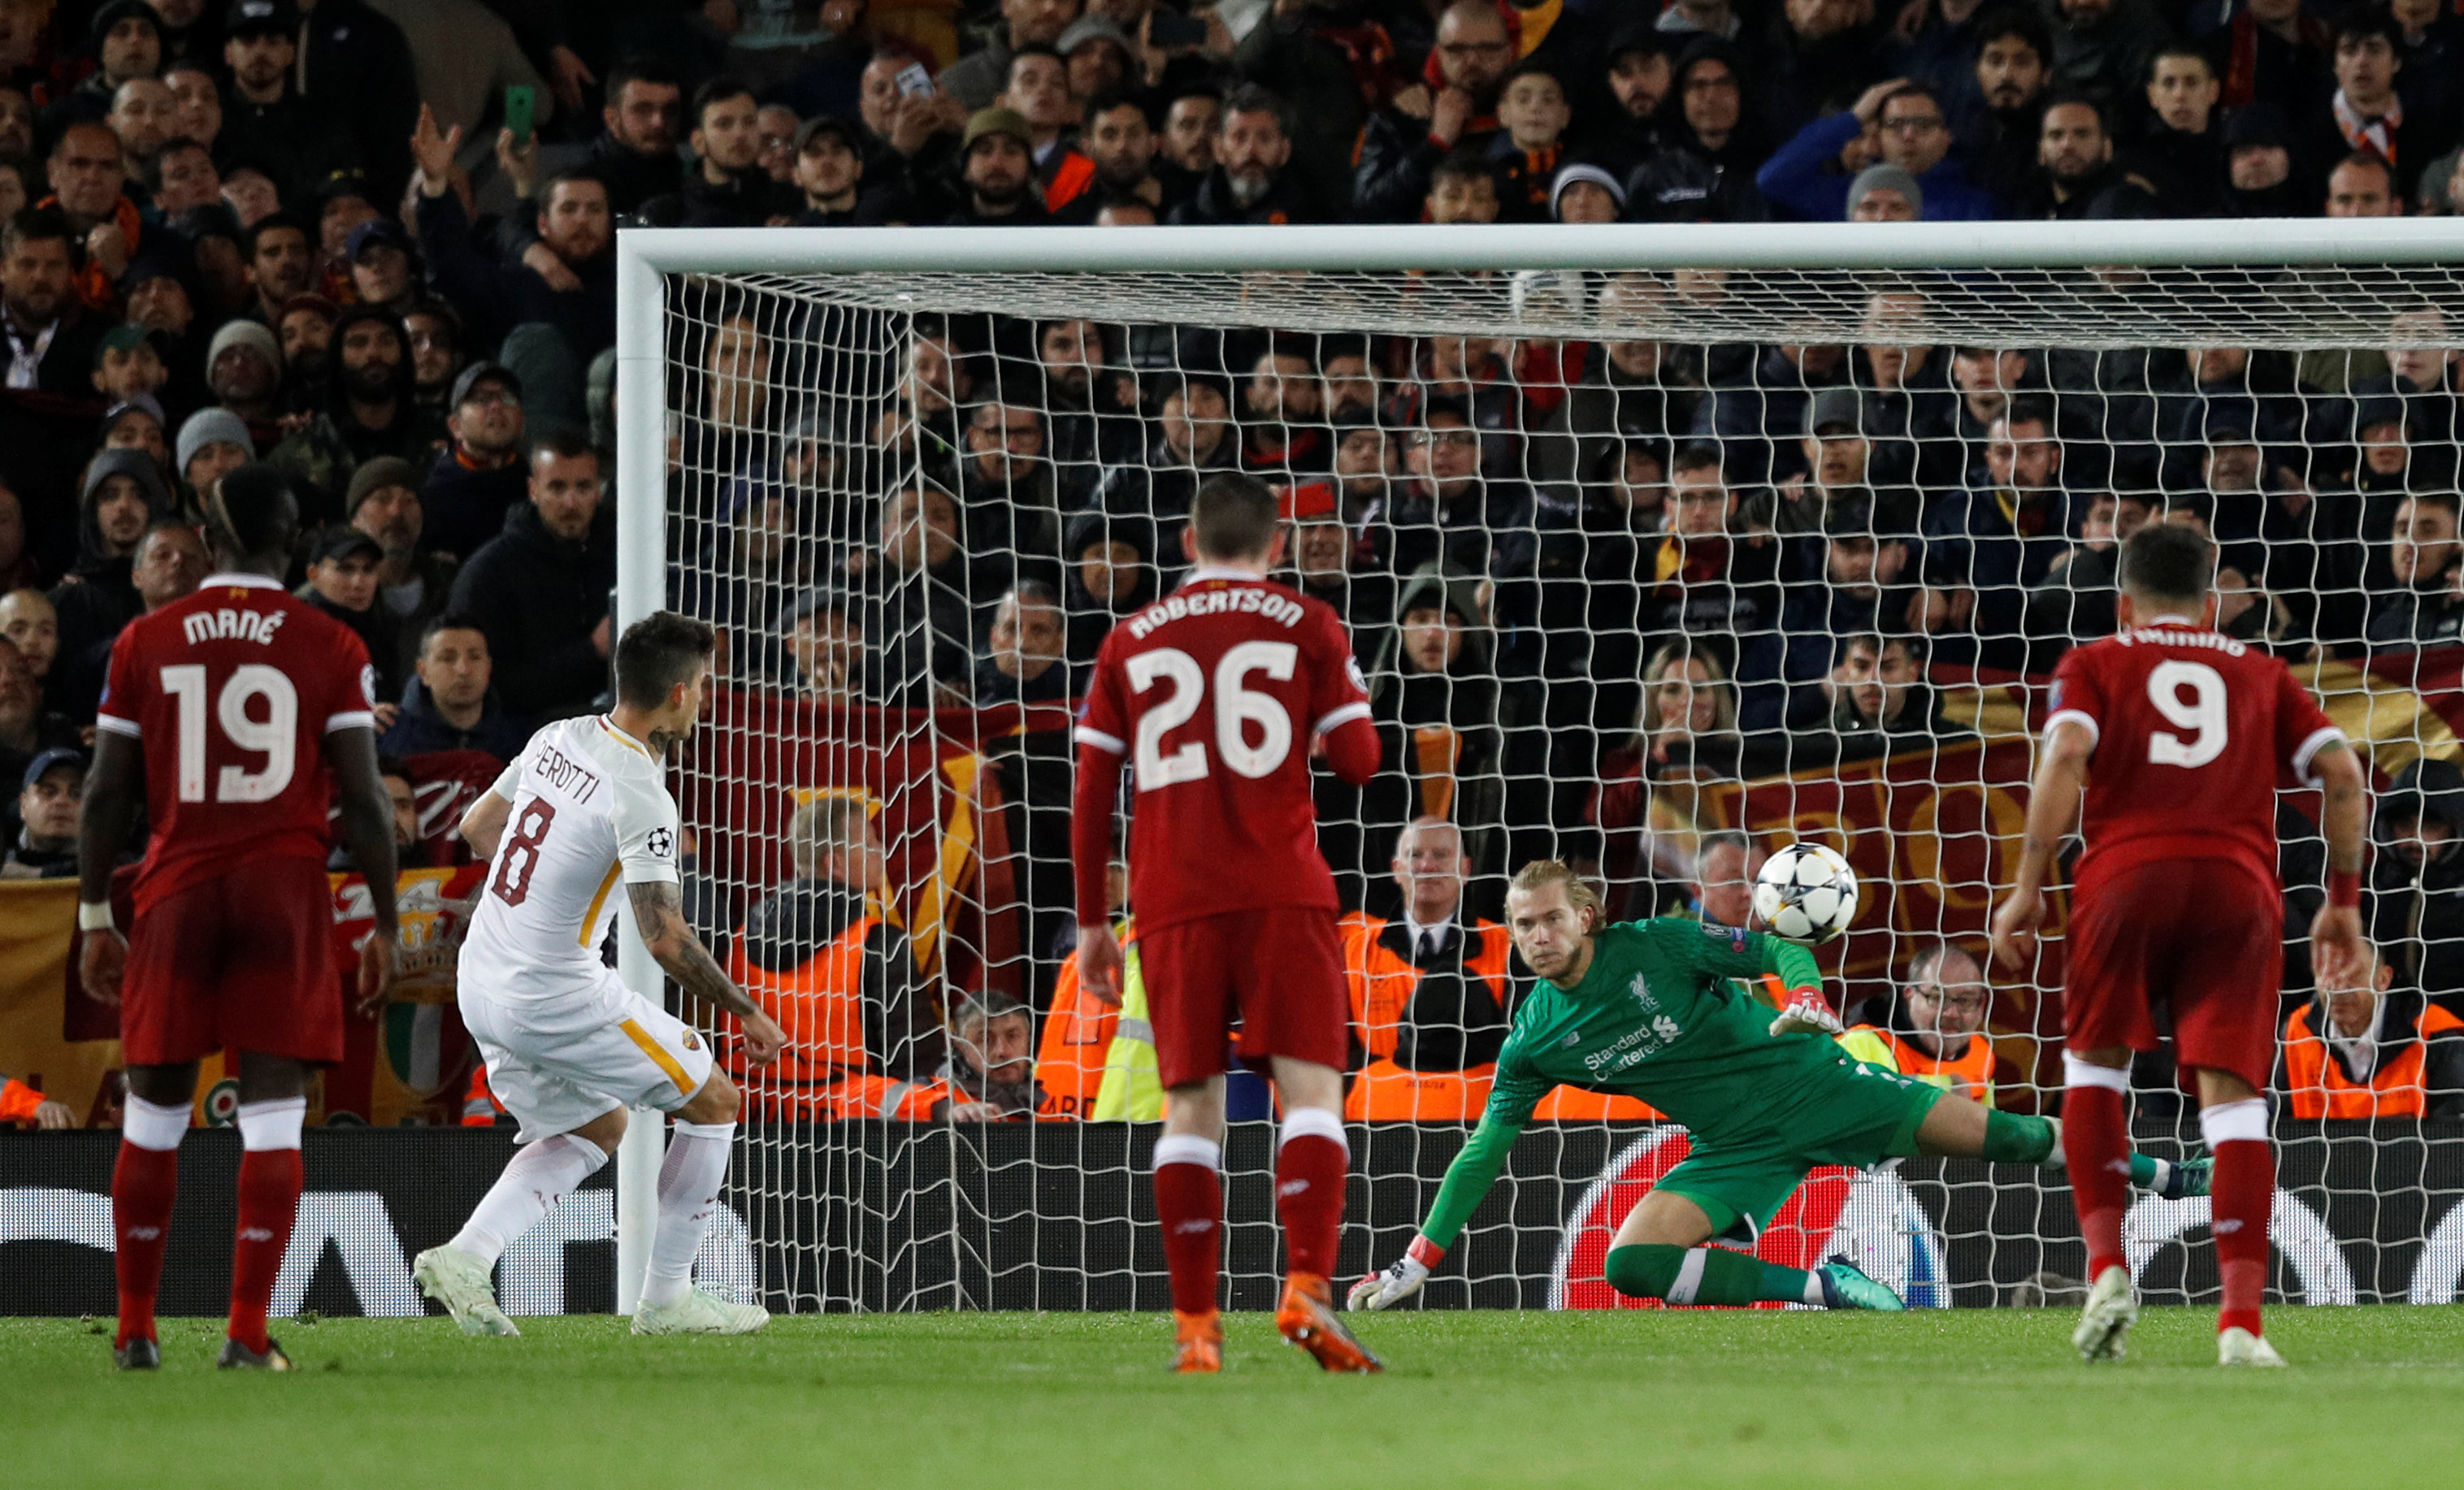 Pha sút penalty rút ngăn tỉ số xuống 2-5 cho Roma của Perotti. Ảnh: REUTERS